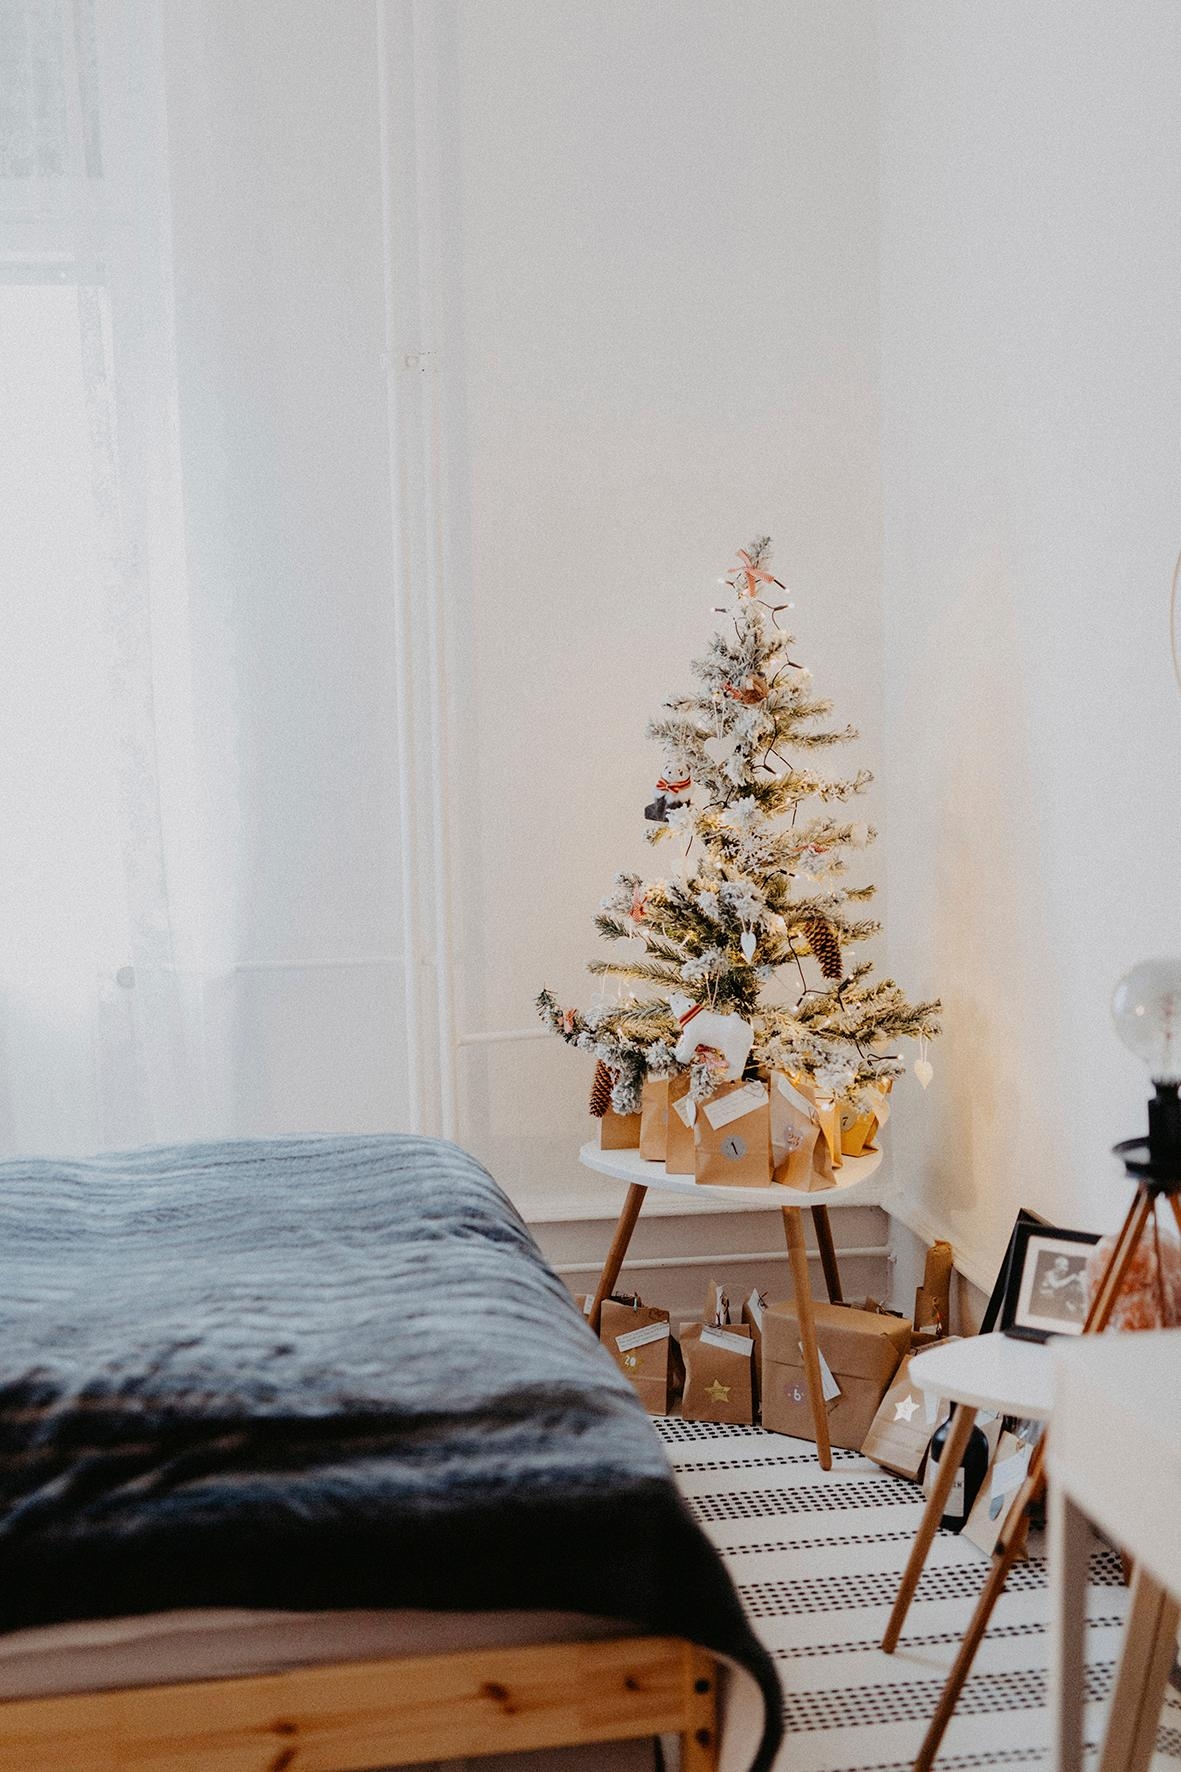 Lieblingsjahreszeit 🥰
#christmas #weihnachtsbaum #home #skandinavisch #lieblingsjahreszeit